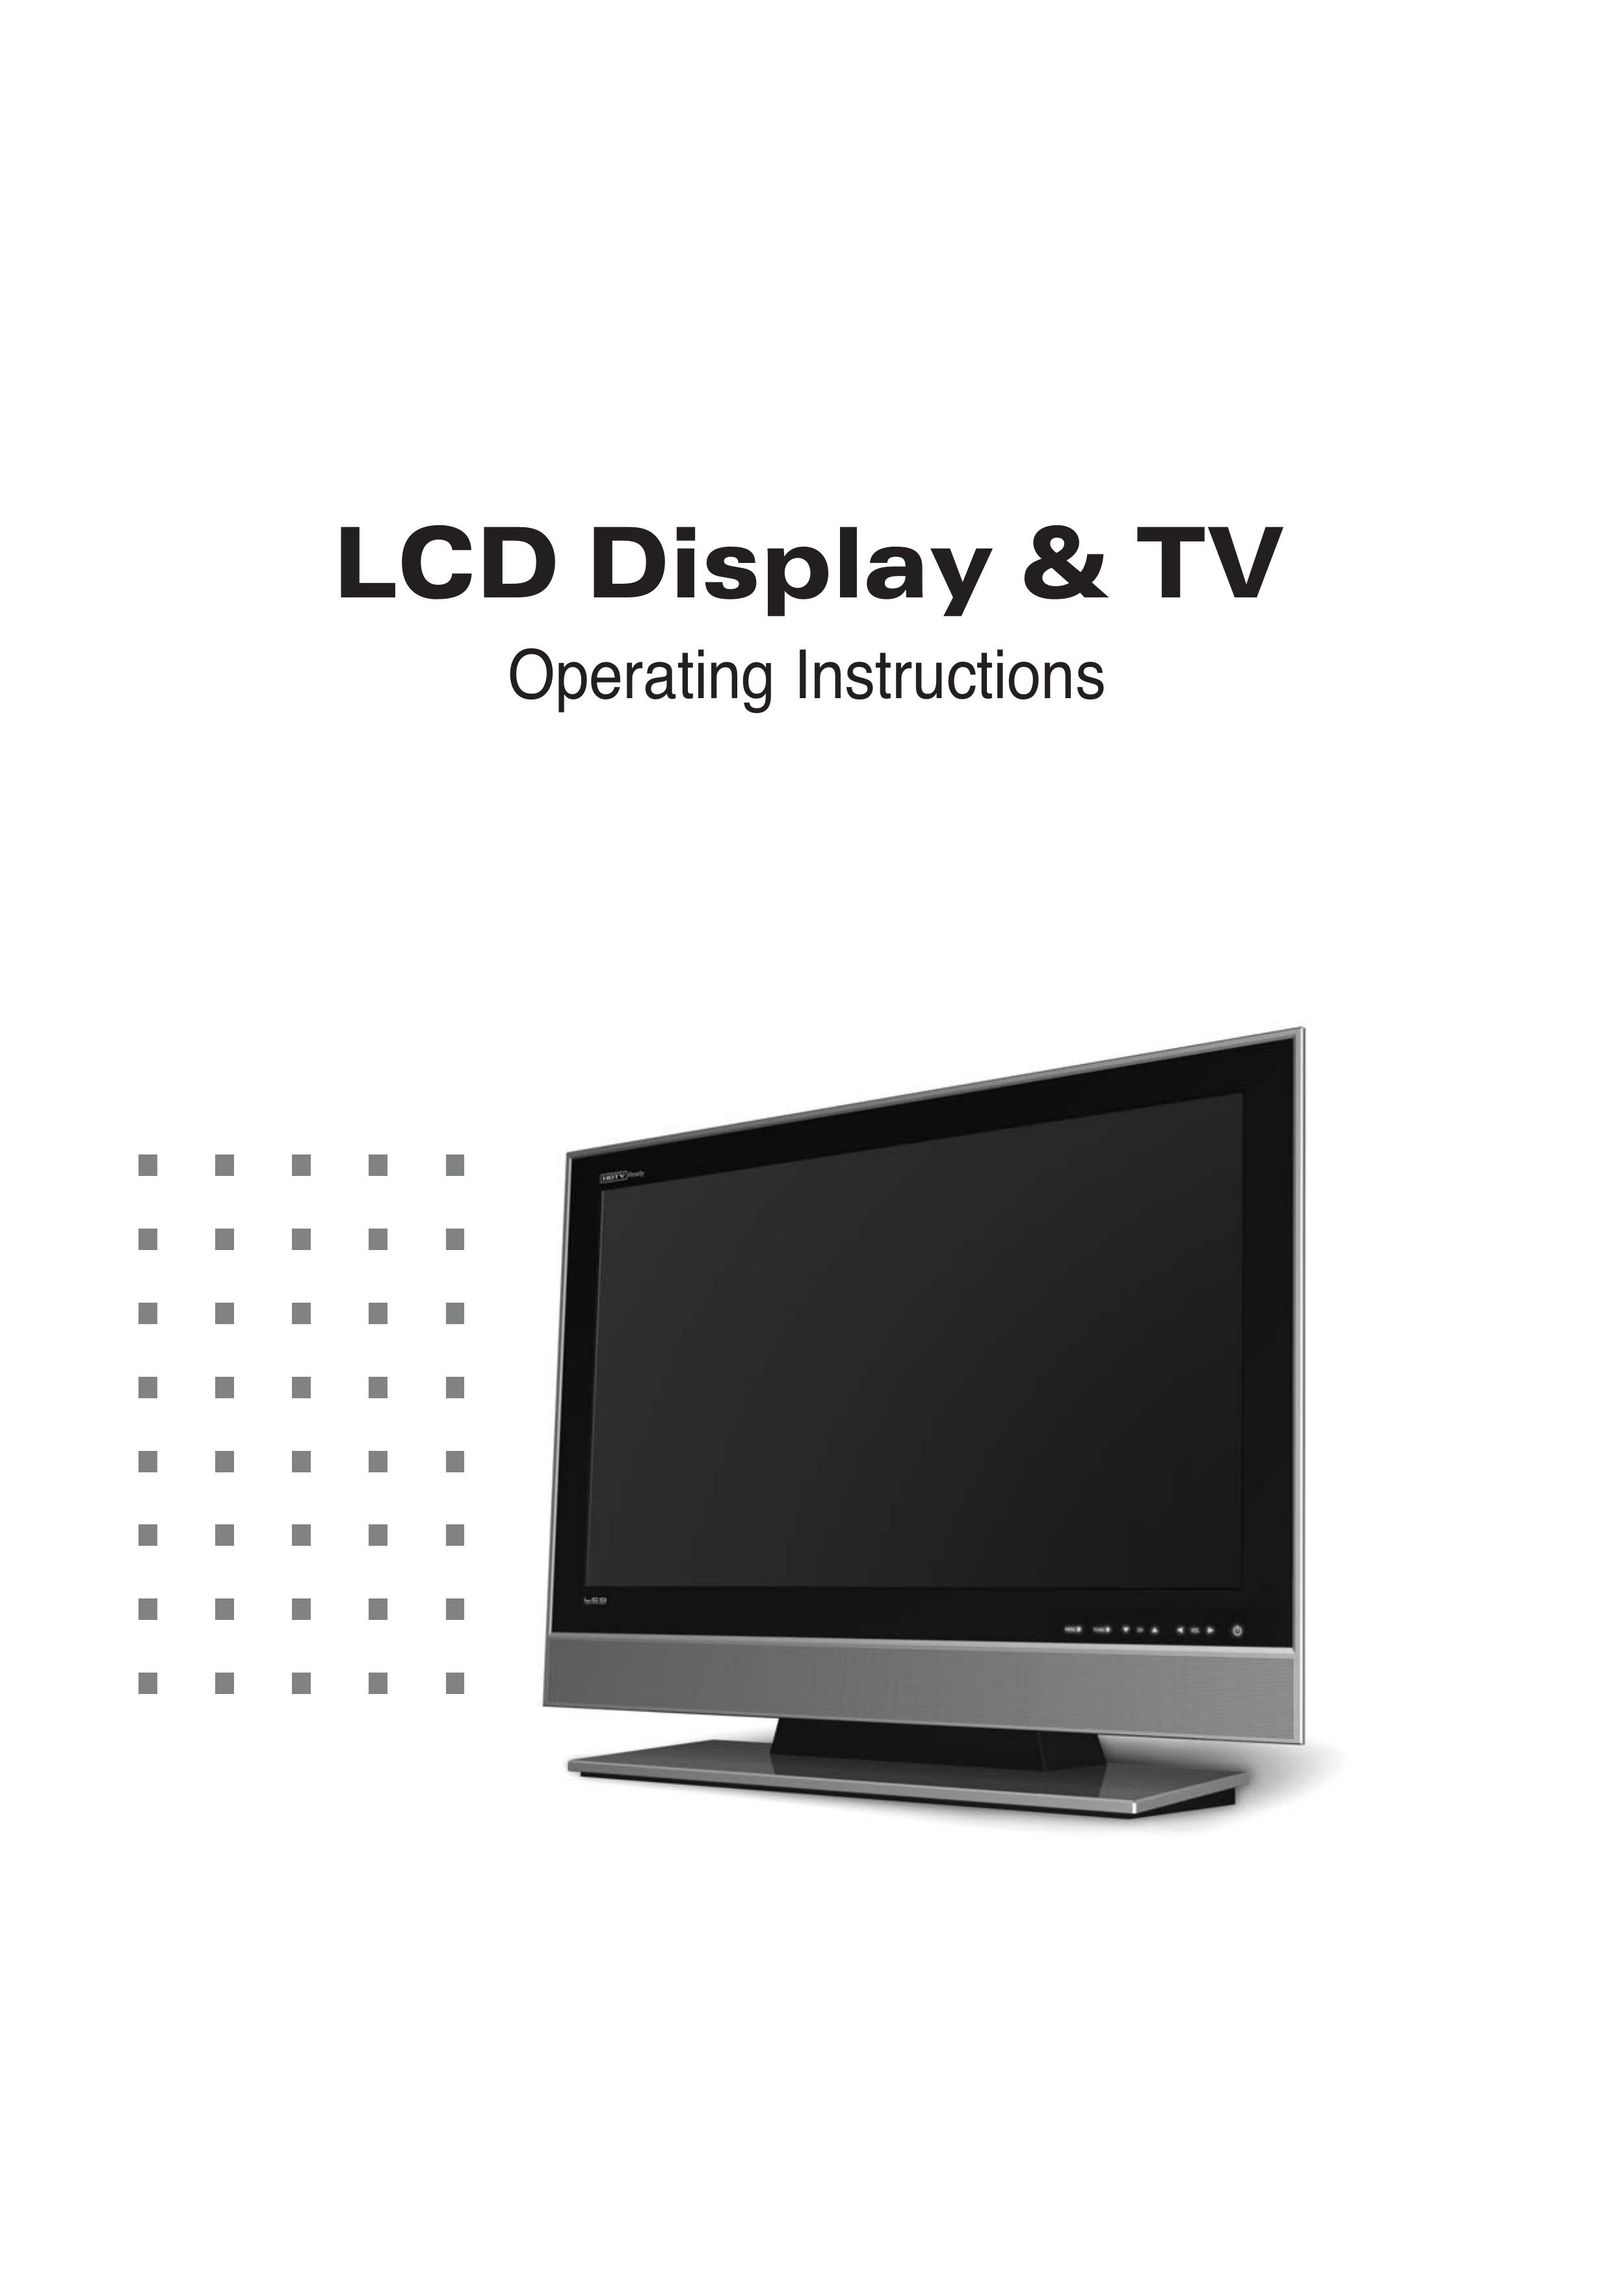 Daitsu LCD Display & TV Flat Panel Television User Manual